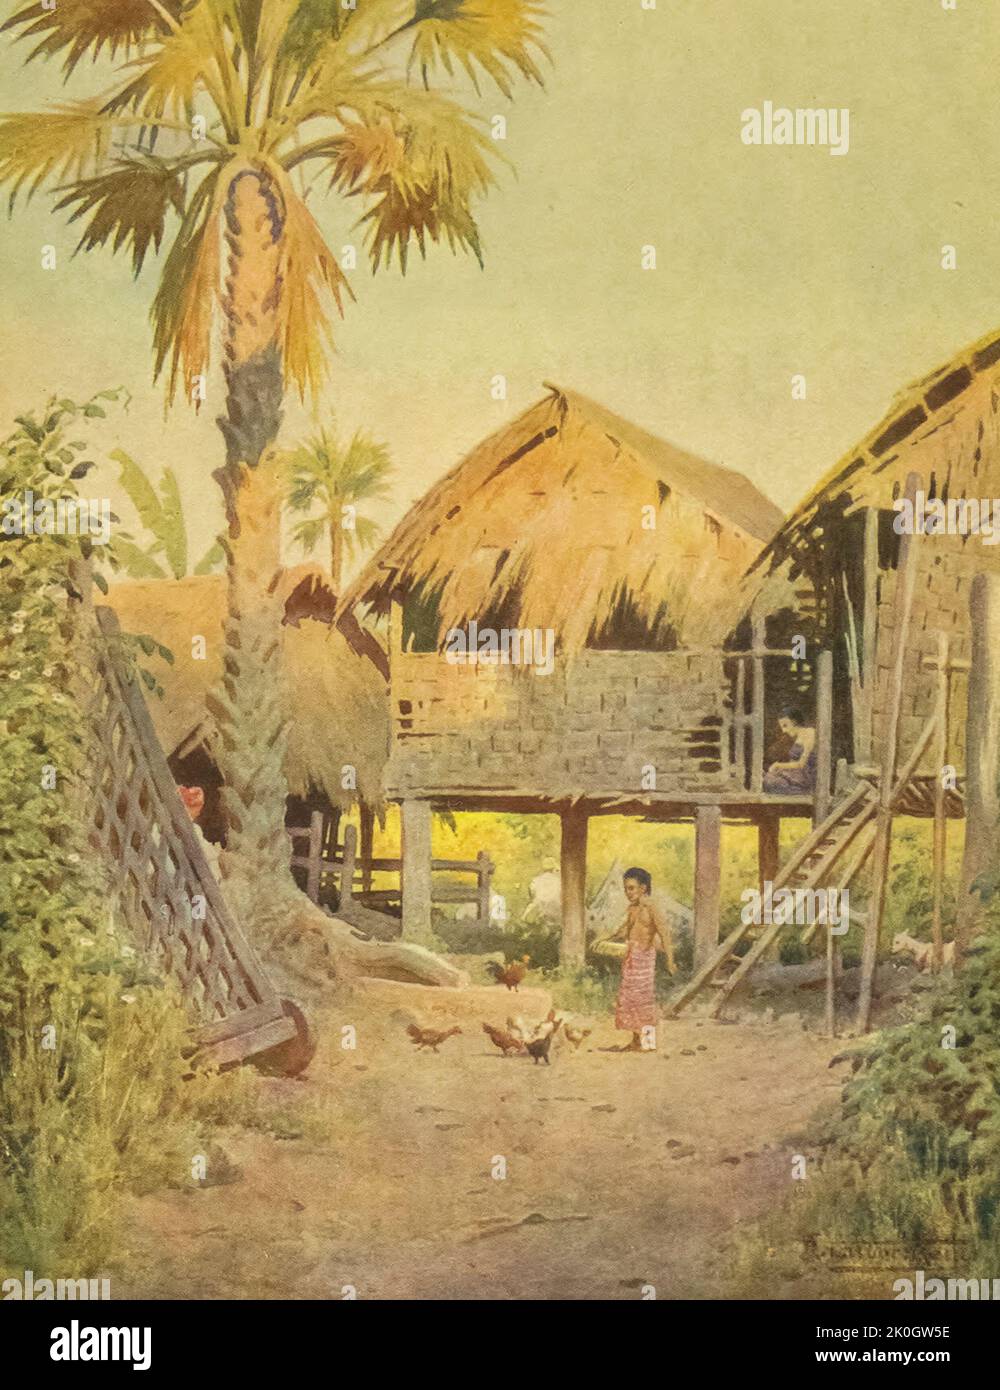 Ingresso al Villaggio di Kyet-Thoung-Doung dal libro ' Burma ' dipinto e descritto da Kelly, R. Talbot (Robert Talbot), 1861-1934 Data di pubblicazione 1905 Editore Londra : Adam e Charles Black Foto Stock